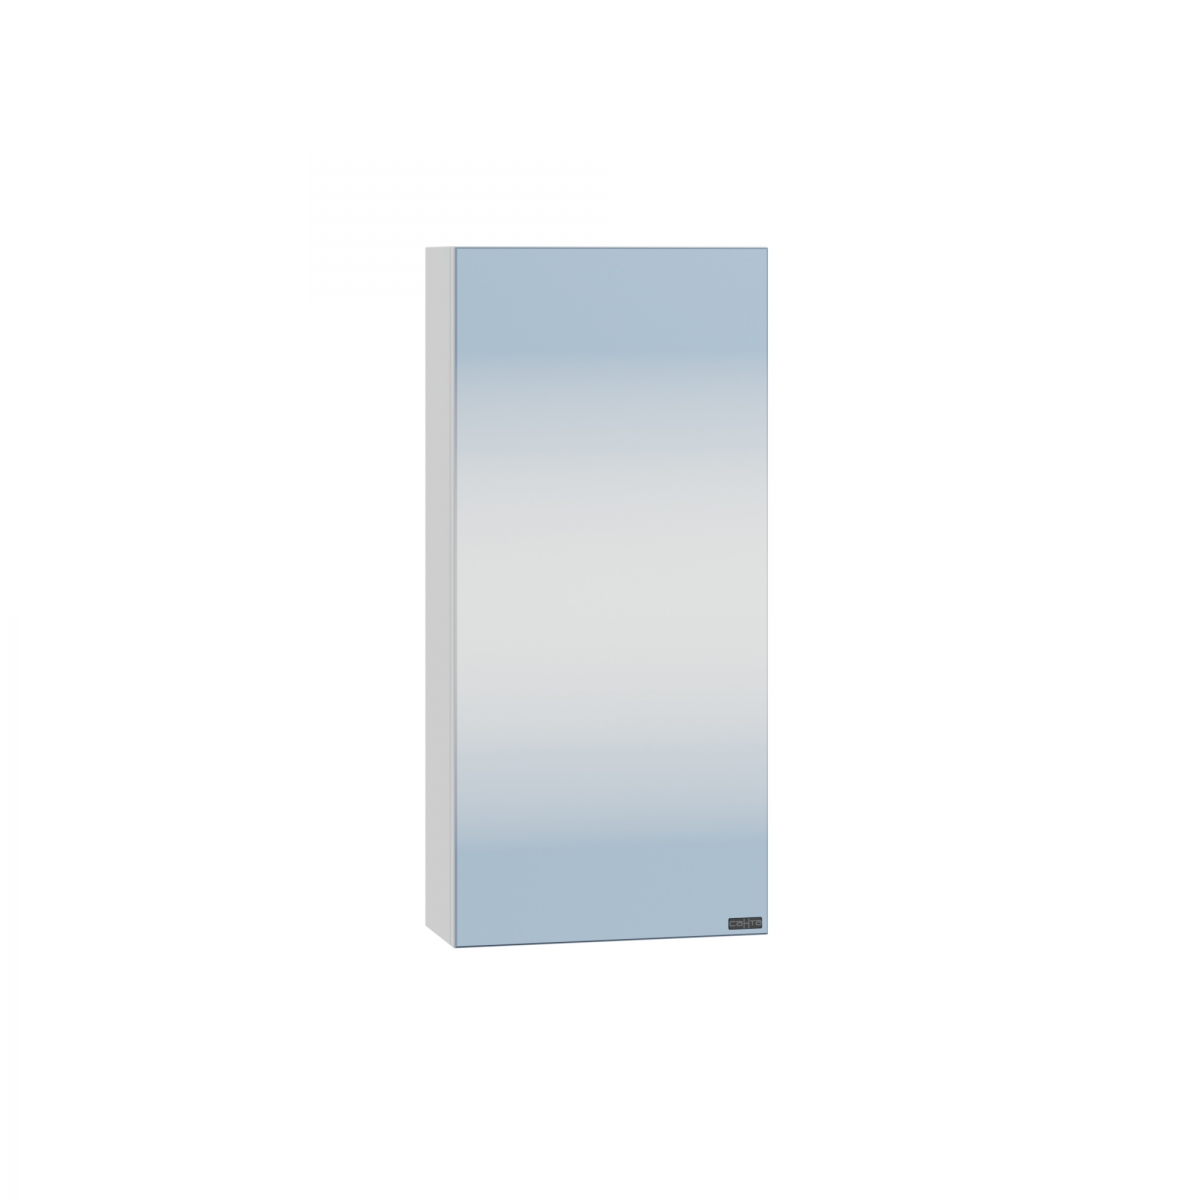 Зеркальный шкаф СанТа Аврора 30 см 700330 подвесной, белый зеркальный шкаф 55х70 см r stella polar